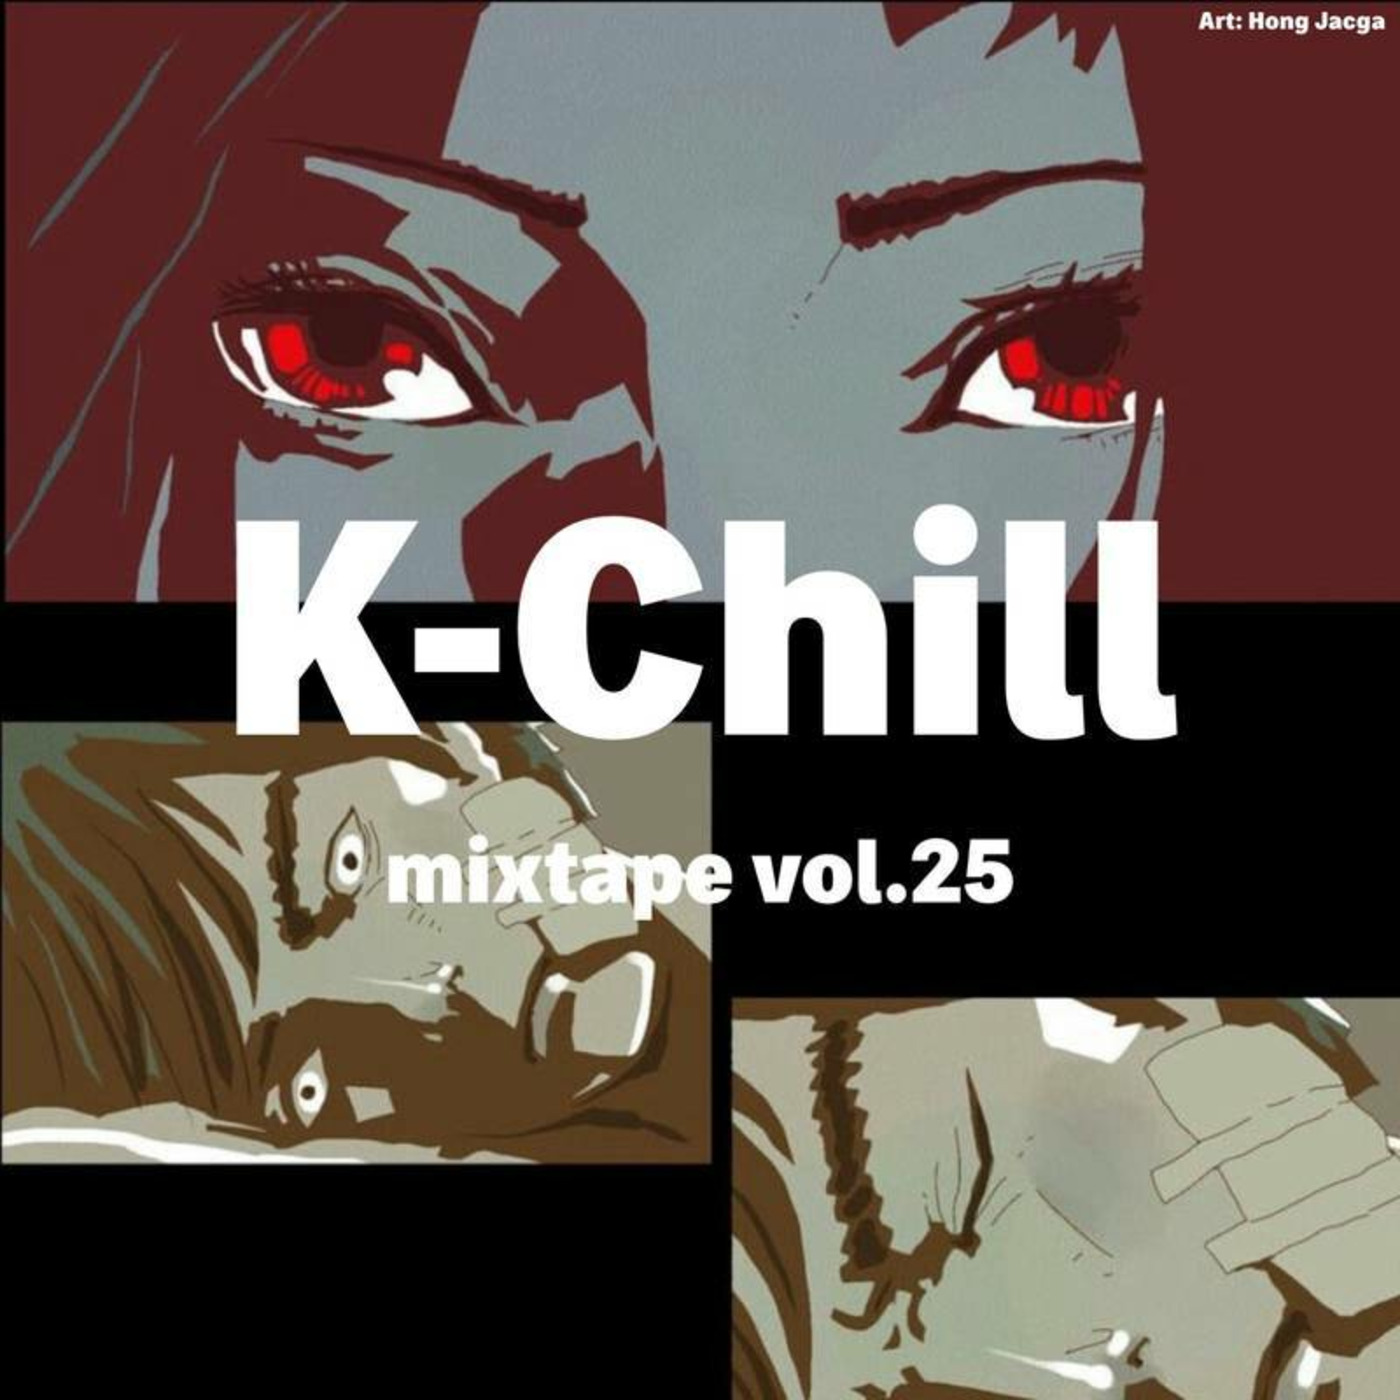 K-Chill mixtape vol.25